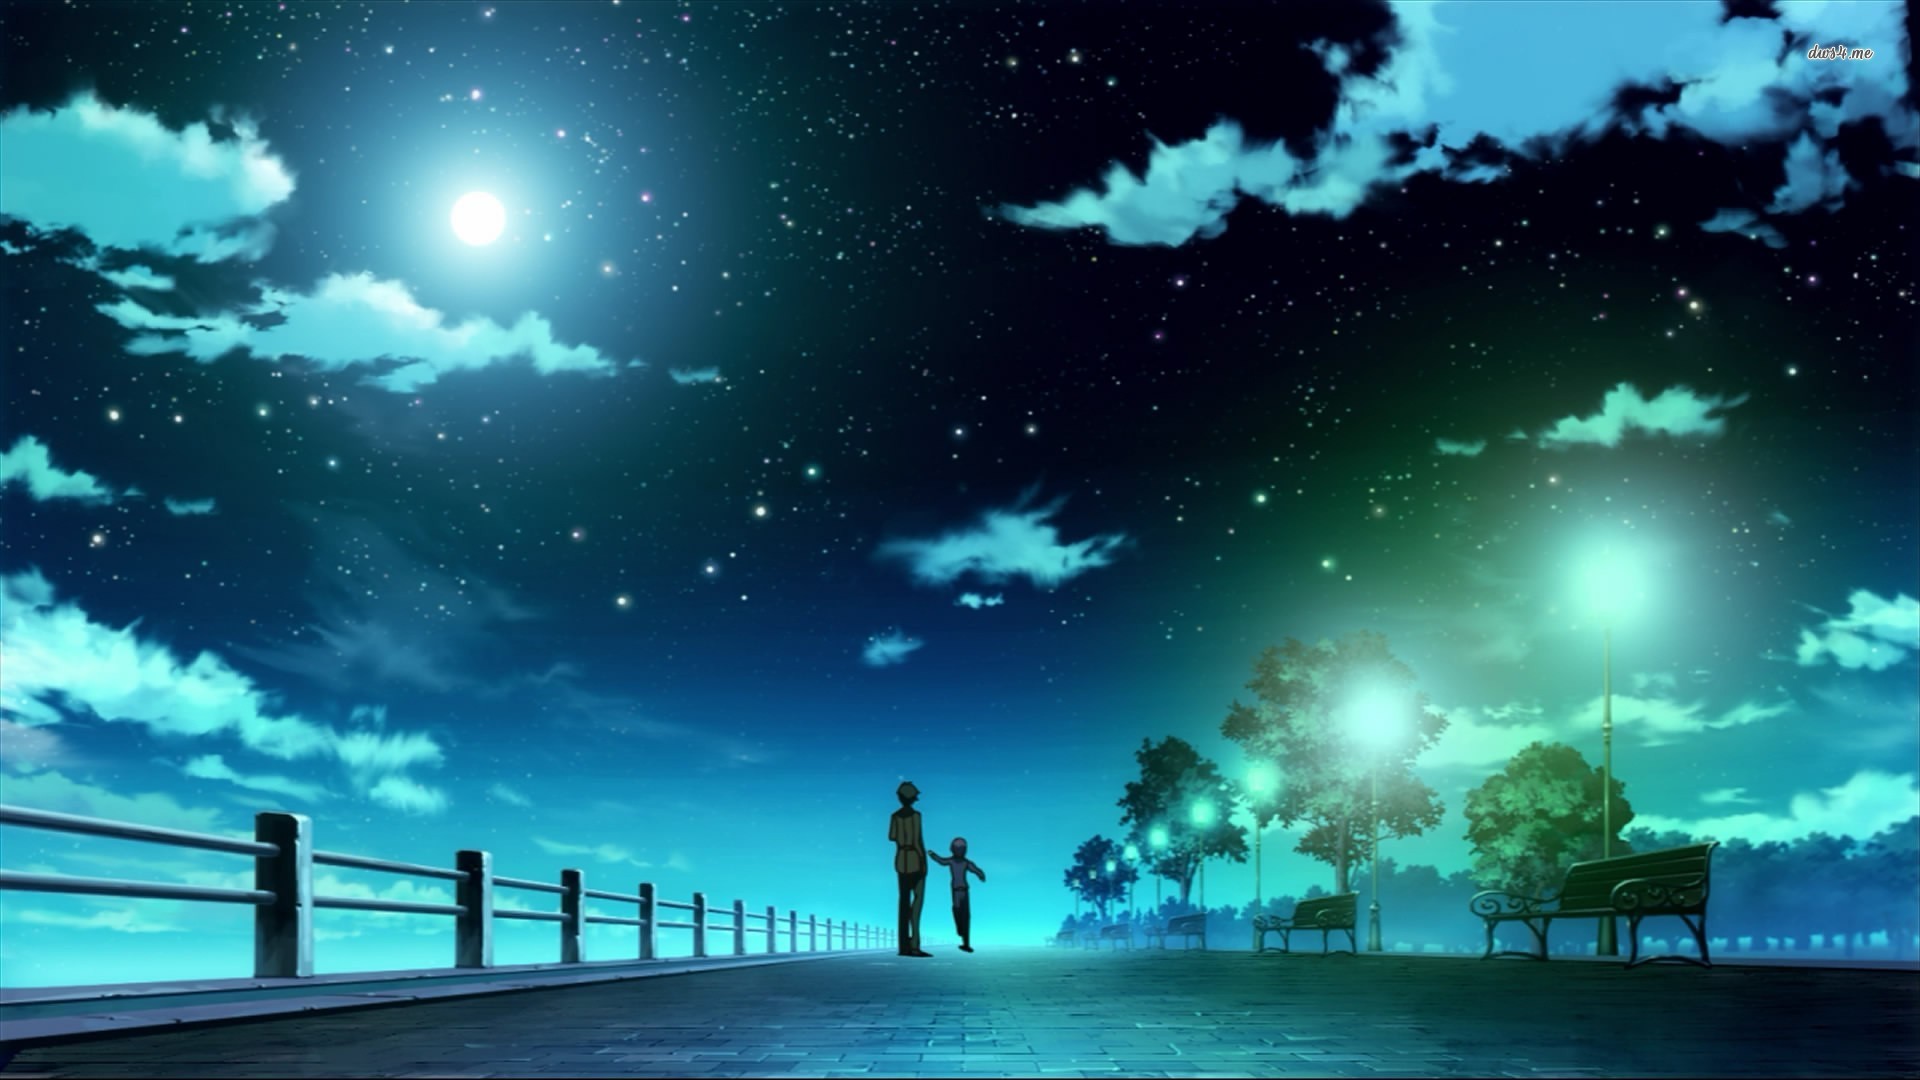 Anime Sky Wallpaper On